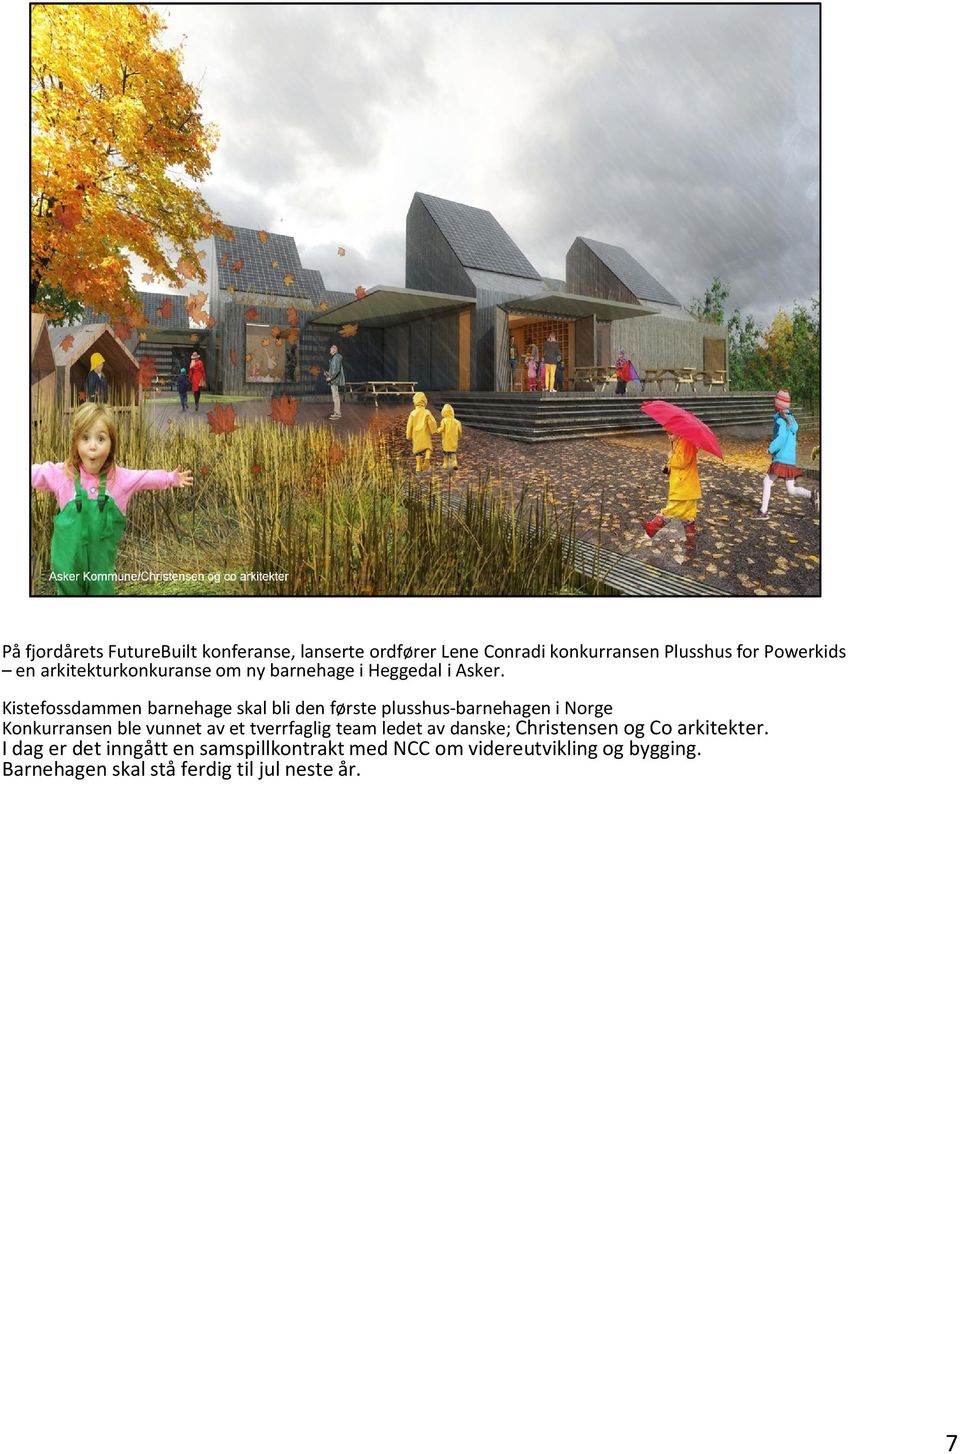 Kistefossdammen barnehage skal bli den første plusshus-barnehagen i Norge Konkurransen ble vunnet av et